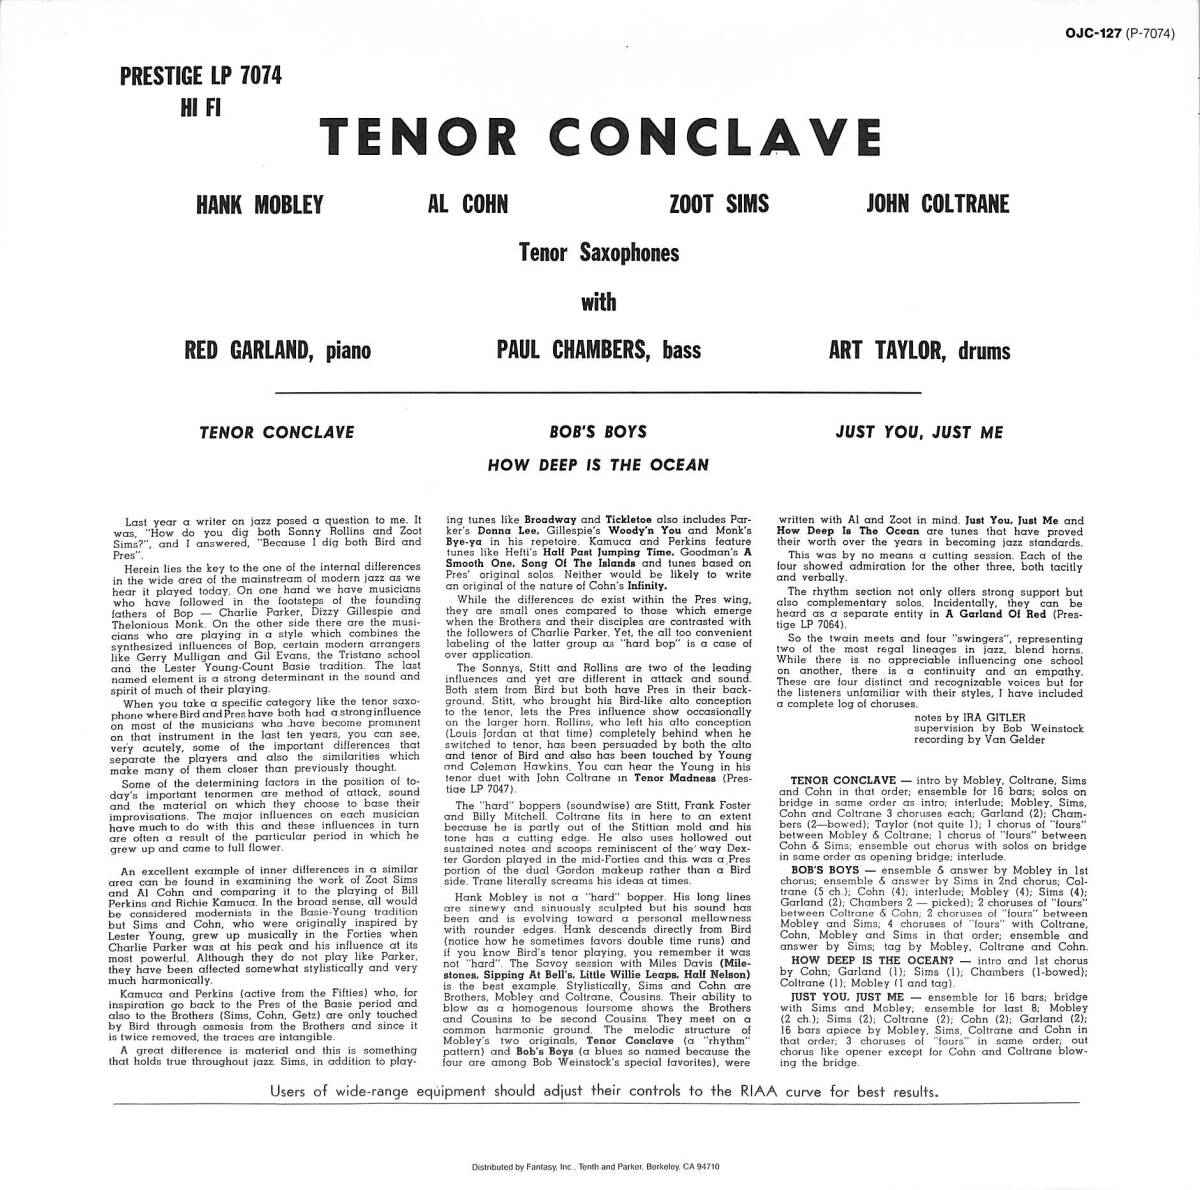 A00591397/LP/ハンク・モブレー / アル・コーン / ジョン・コルトレーン / ズート・シムズ「Tenor Conclave (1984年・OJC-127・ハードバの画像2